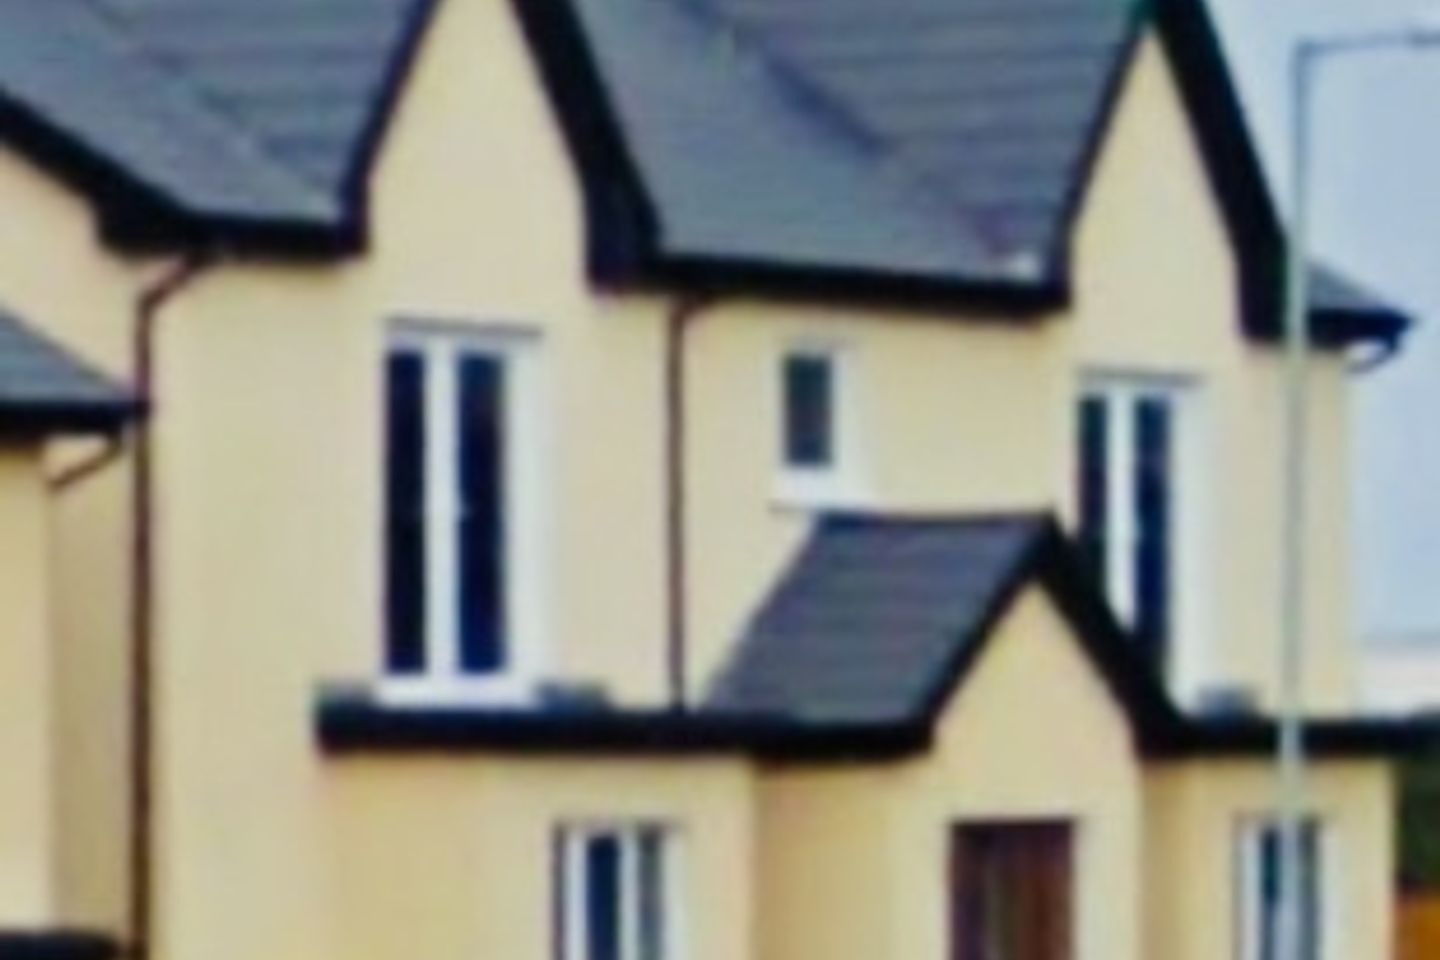 38 to 41 Glebe Manor.Block of 4x2 bed,1 to 2 bath, Glebe Manor, Glebe Manor, Whitegate, Co. Cork